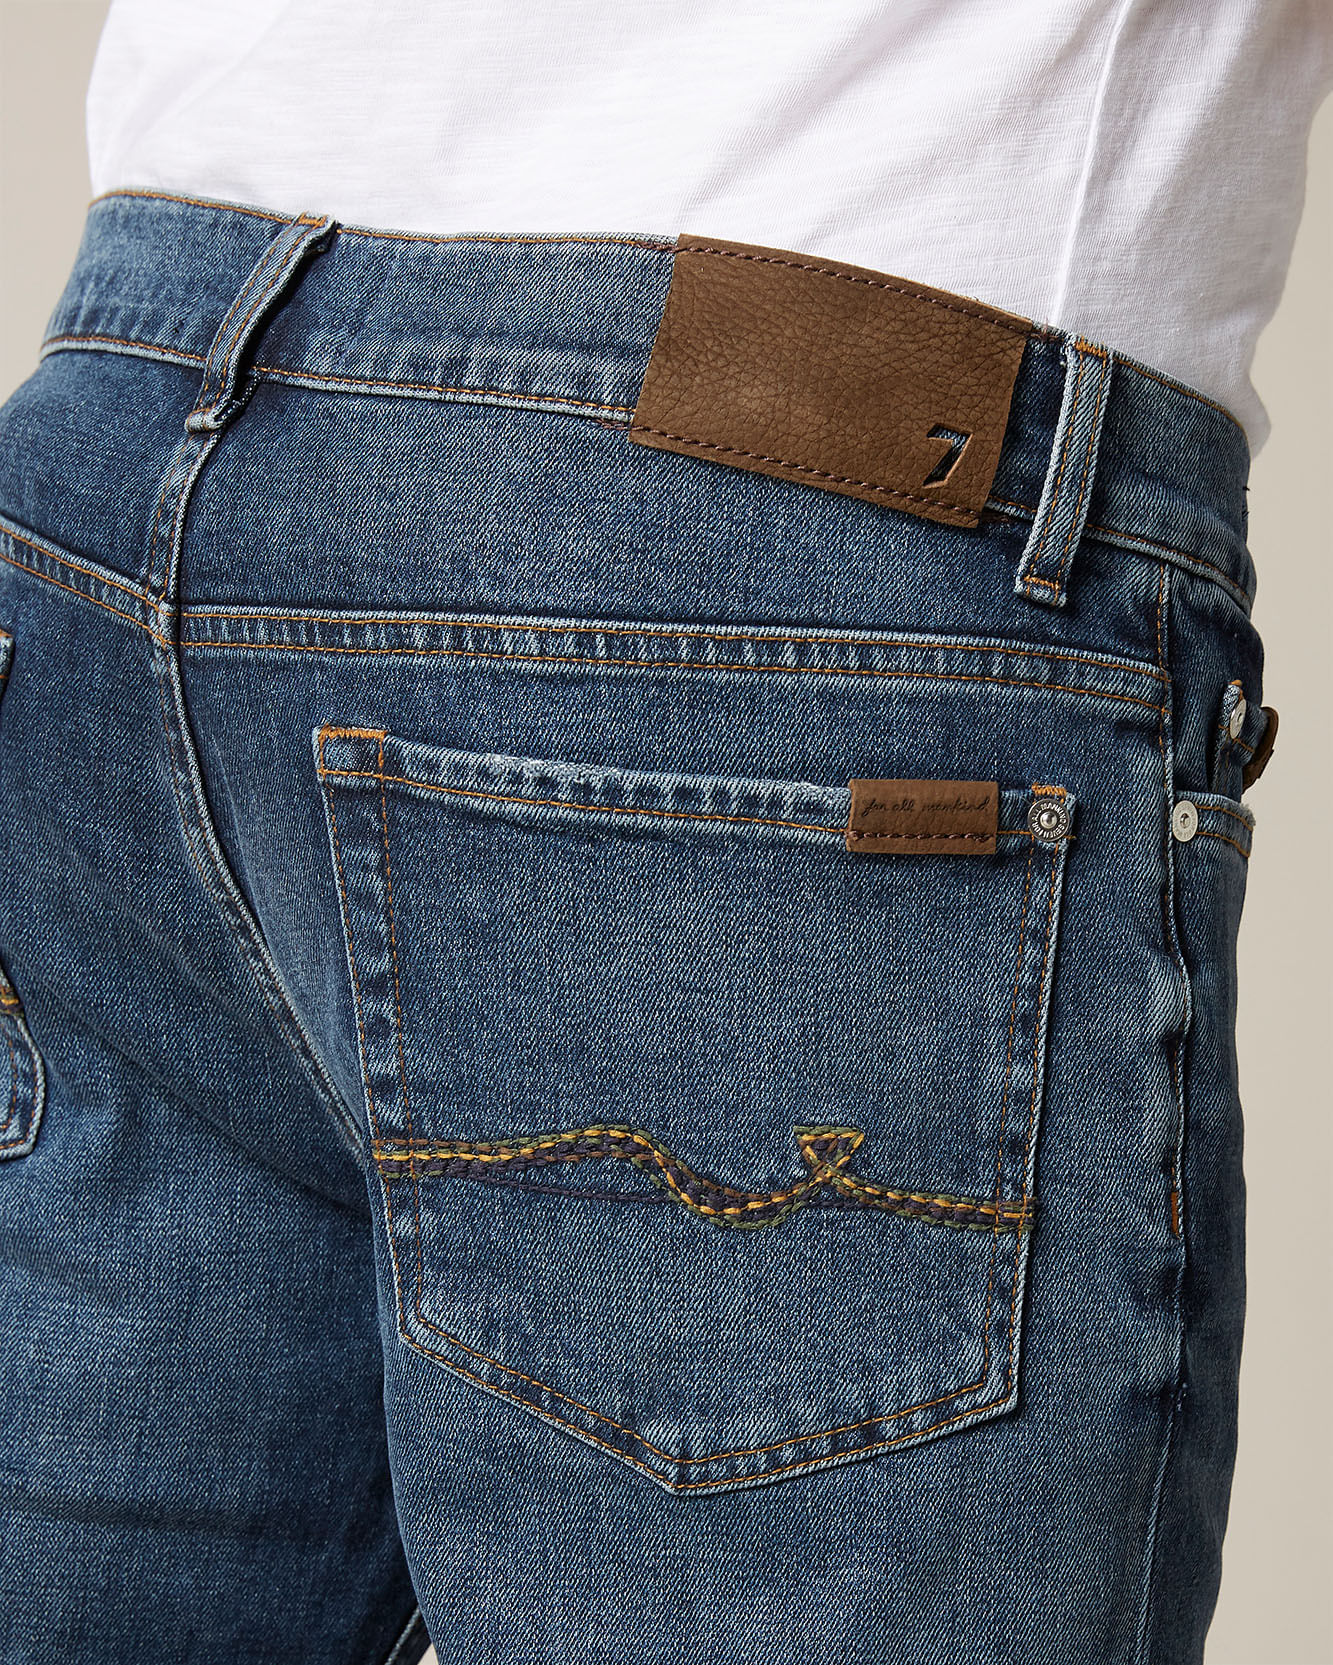 Calças Jeans CP – Caparica Peles